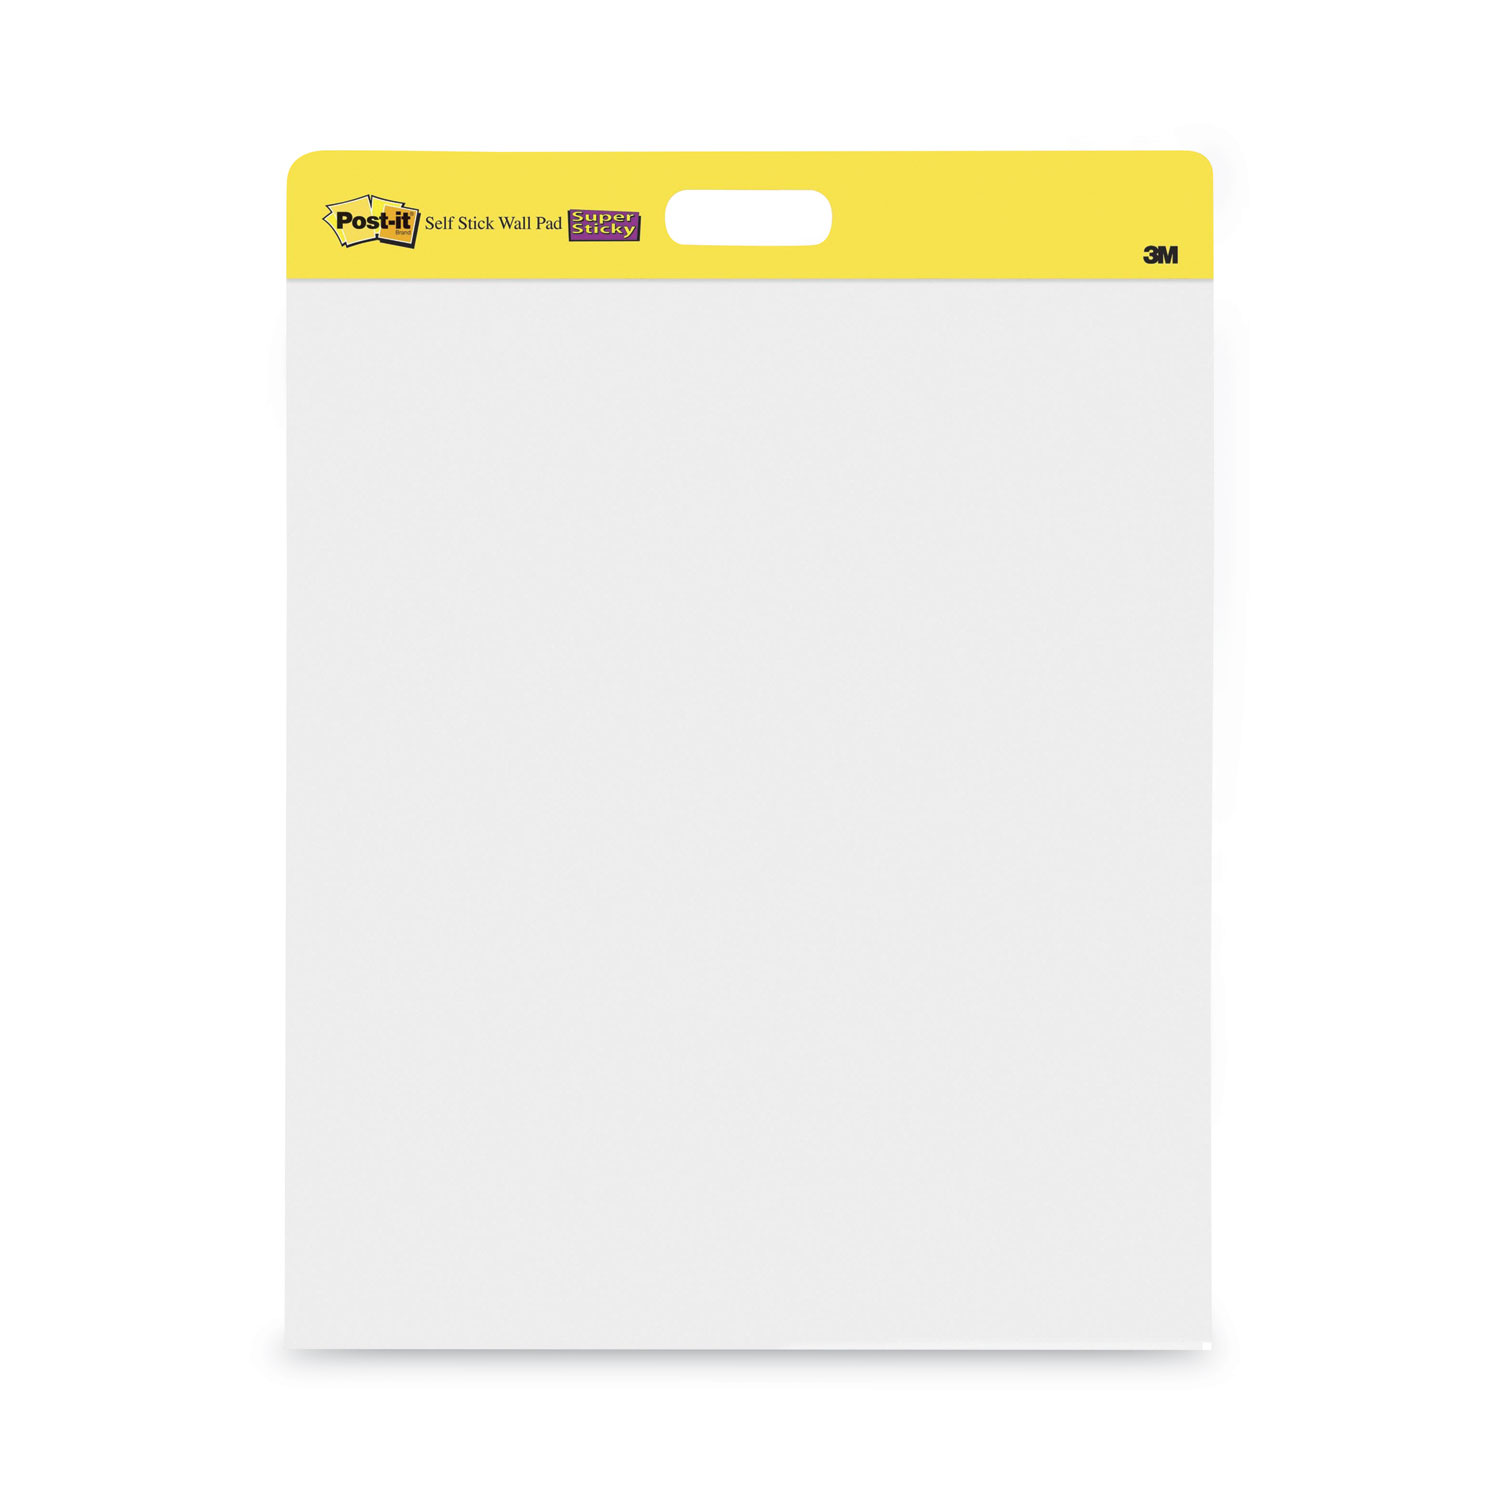 Self-Stick Wall Pad, Unruled, 20 x 23, White, 20 Sheets/Pad, 2